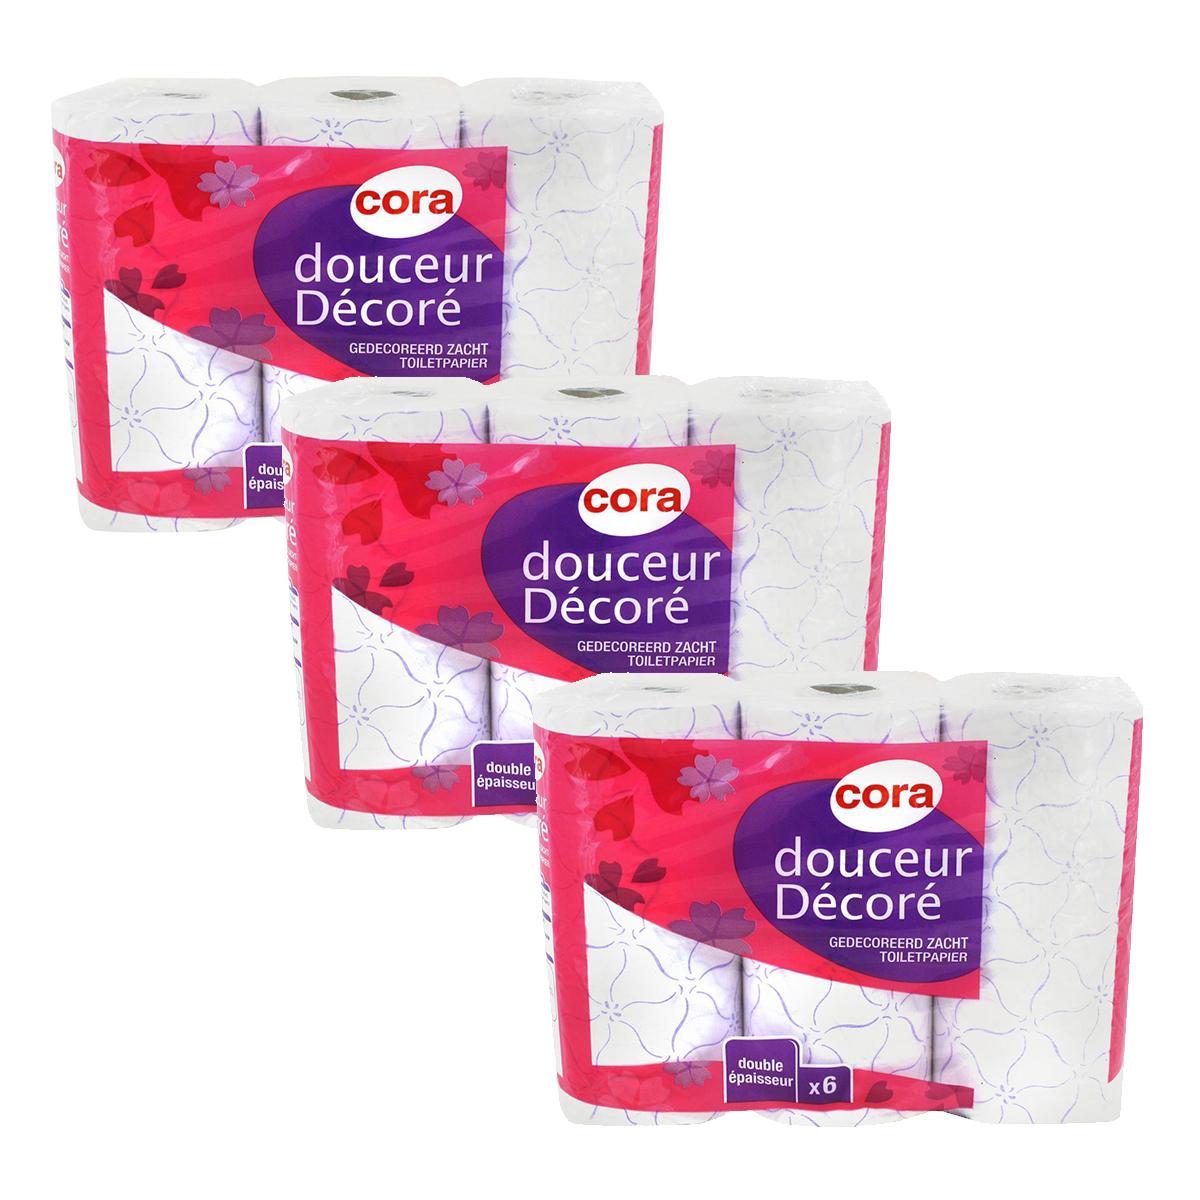 Promotion Cora Papier toilette - Douceur décoré, Lot de 3 x 6 rouleaux